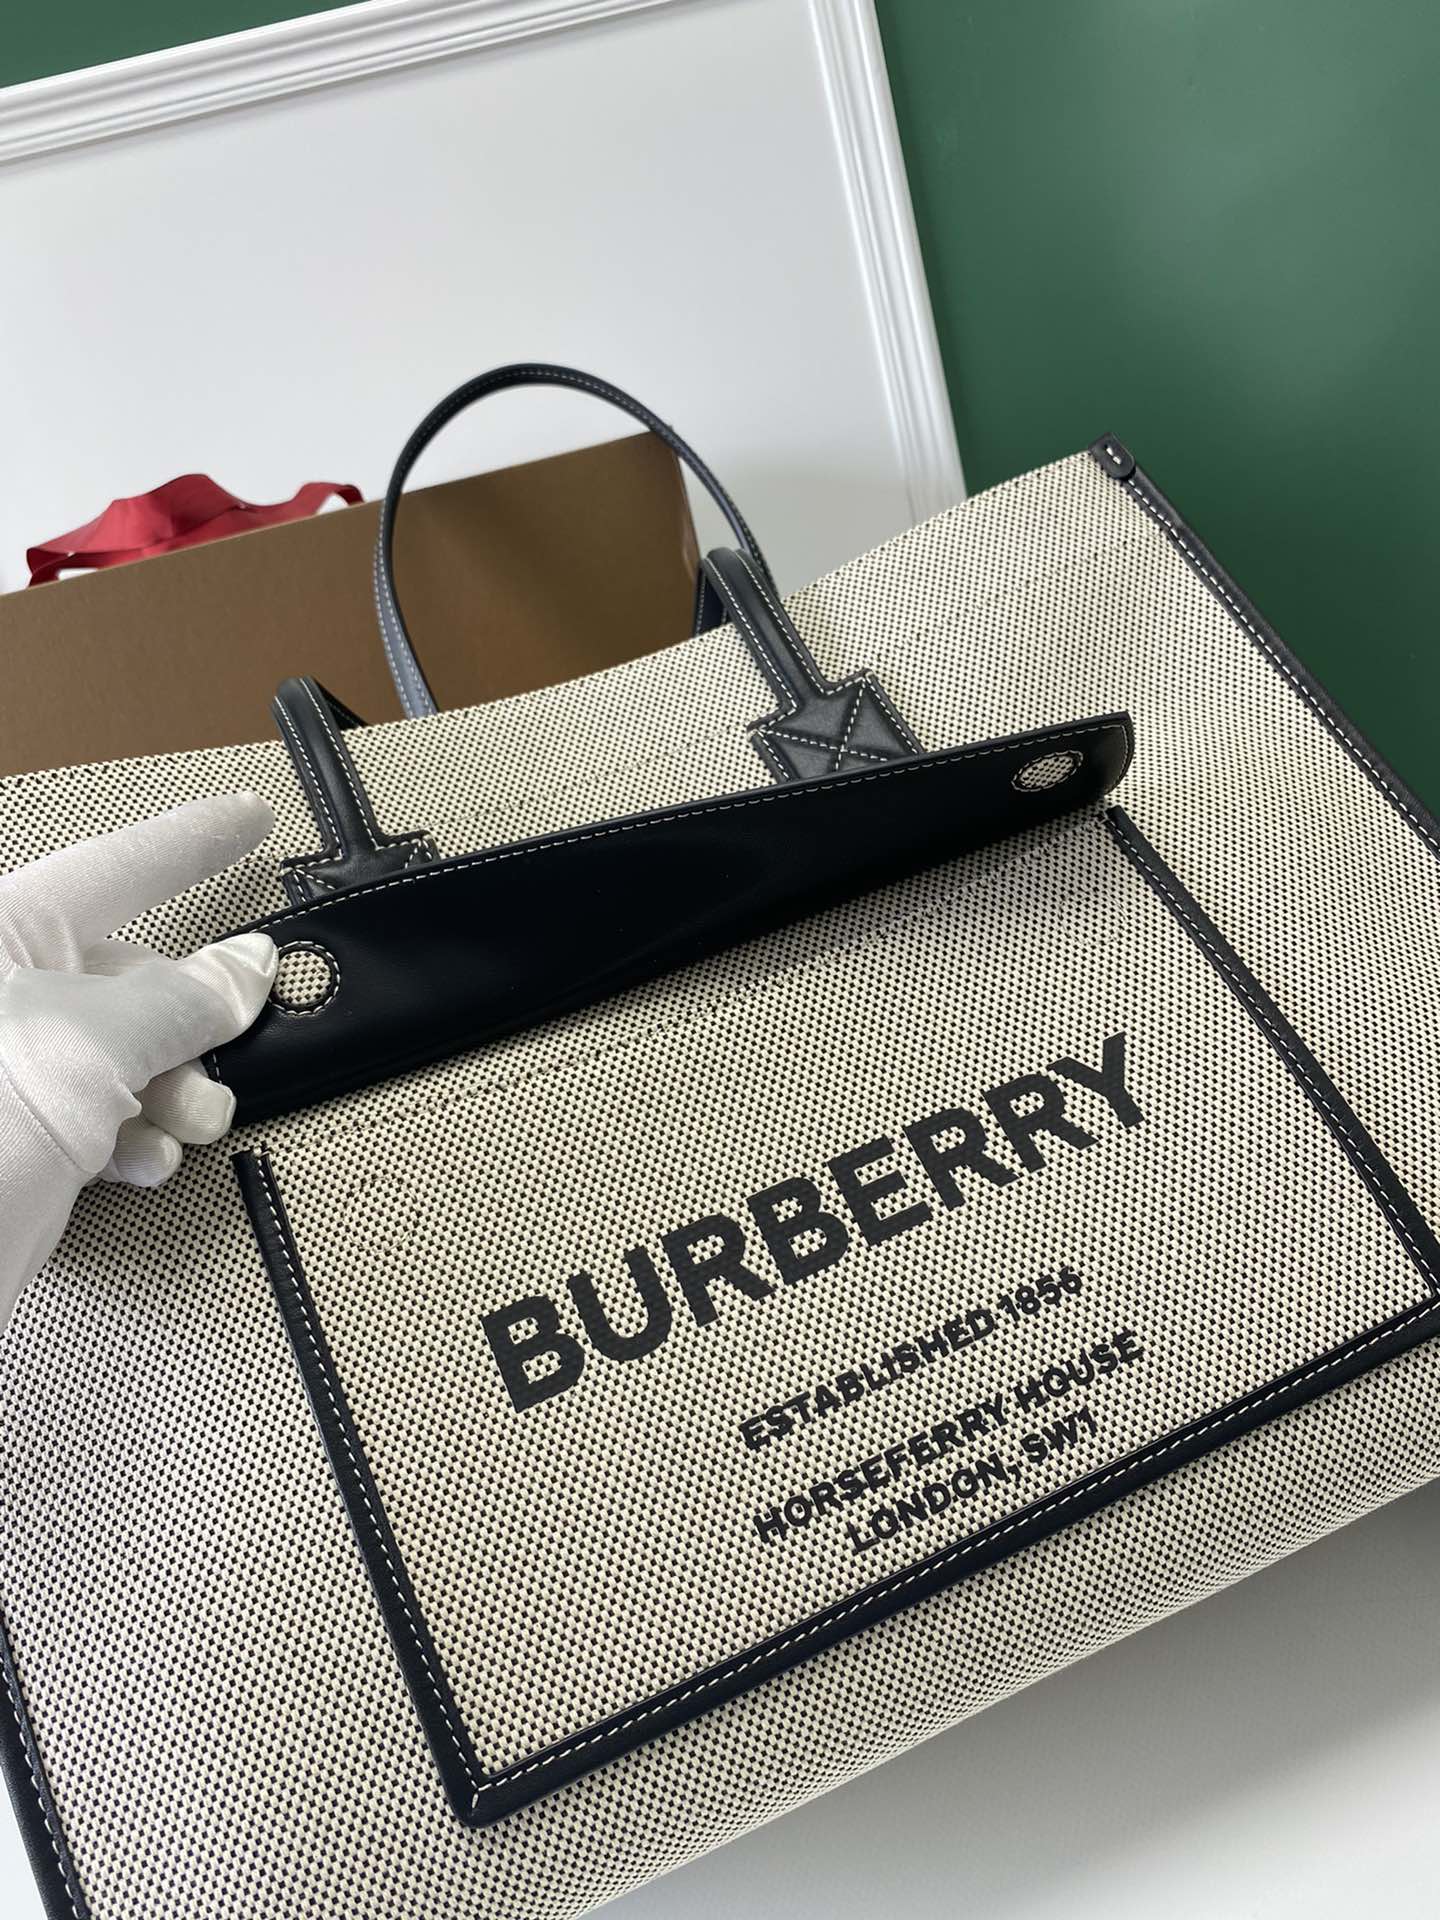 Burberry巴宝莉缉明线皮革及棉质帆布最新精制托特包